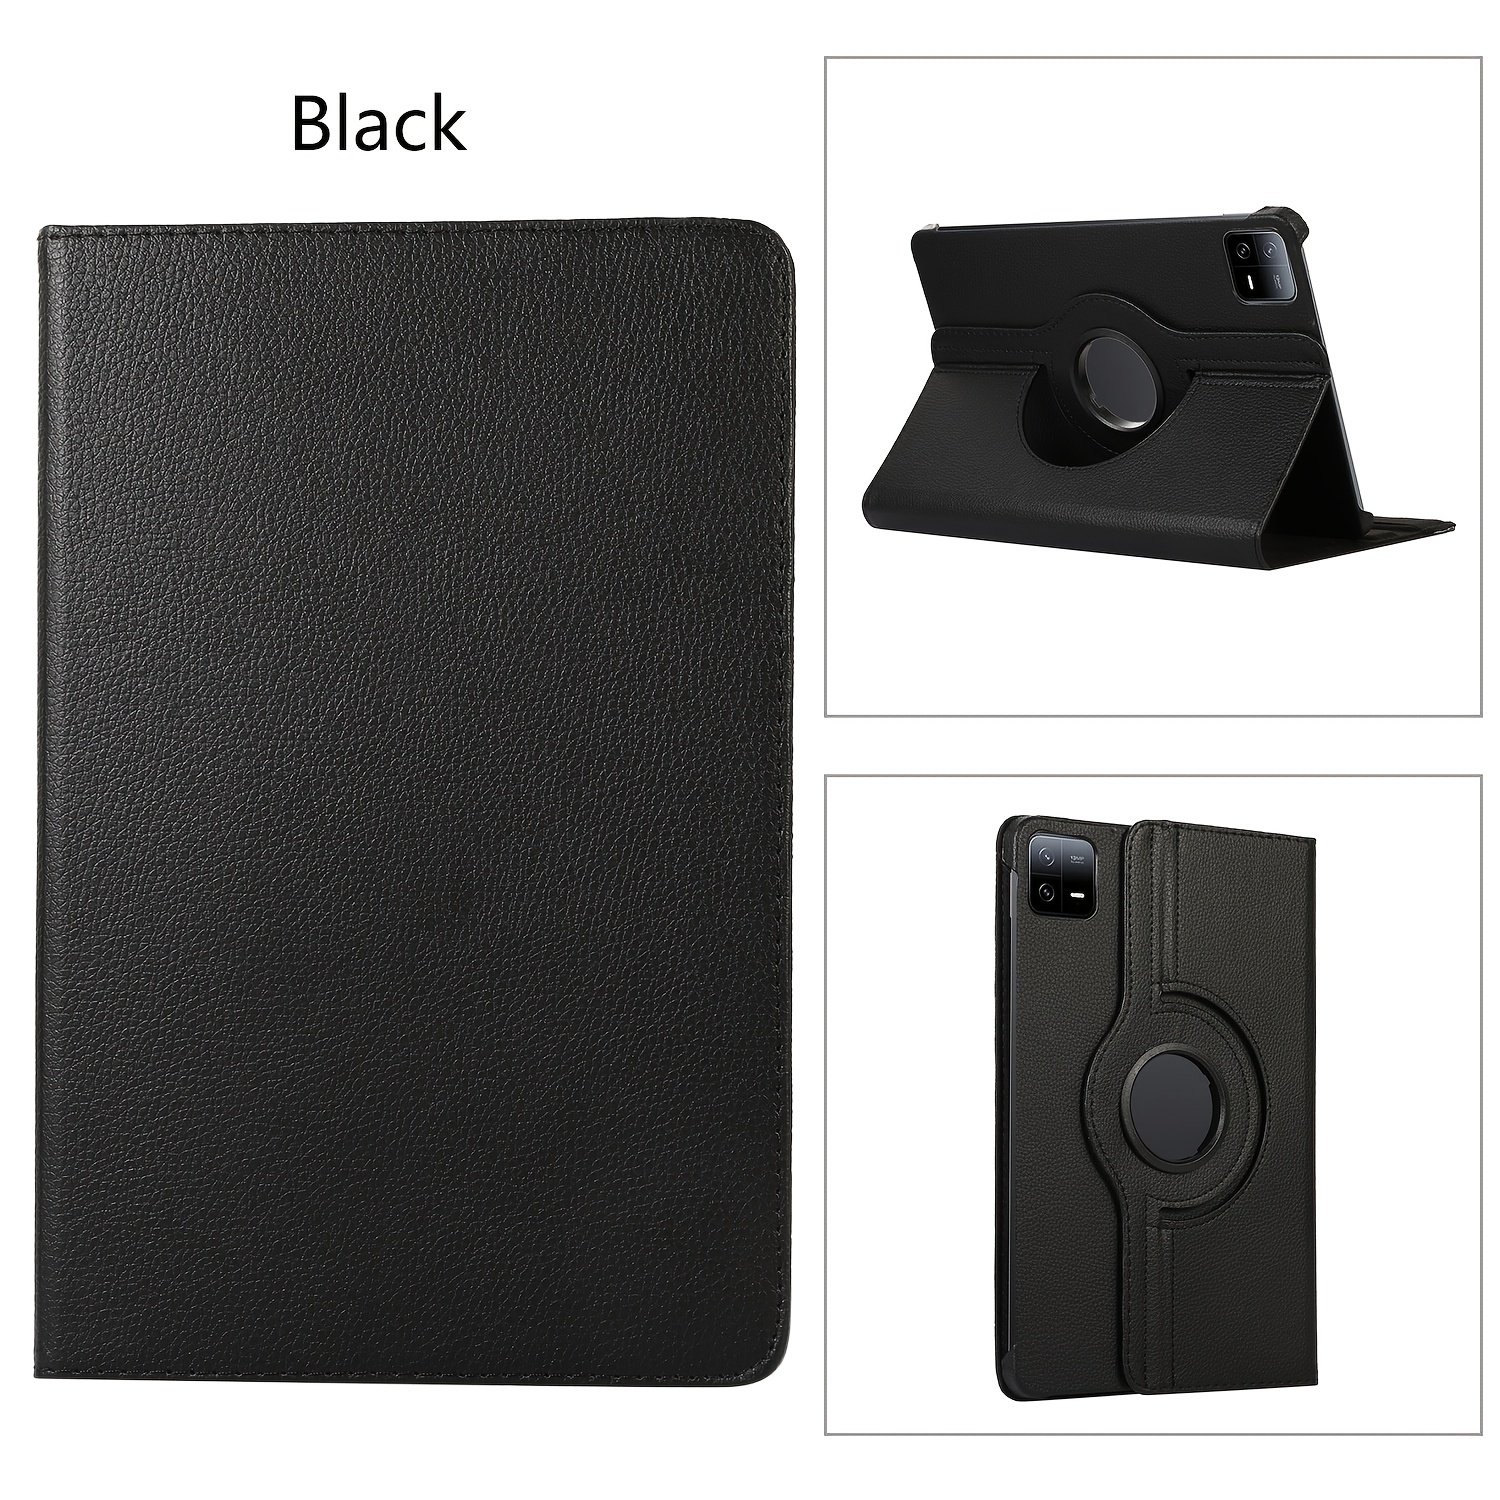 Original Xiaomi Mi Pad 6 / 6Pro Tablet Case 11 2023 PU Leather